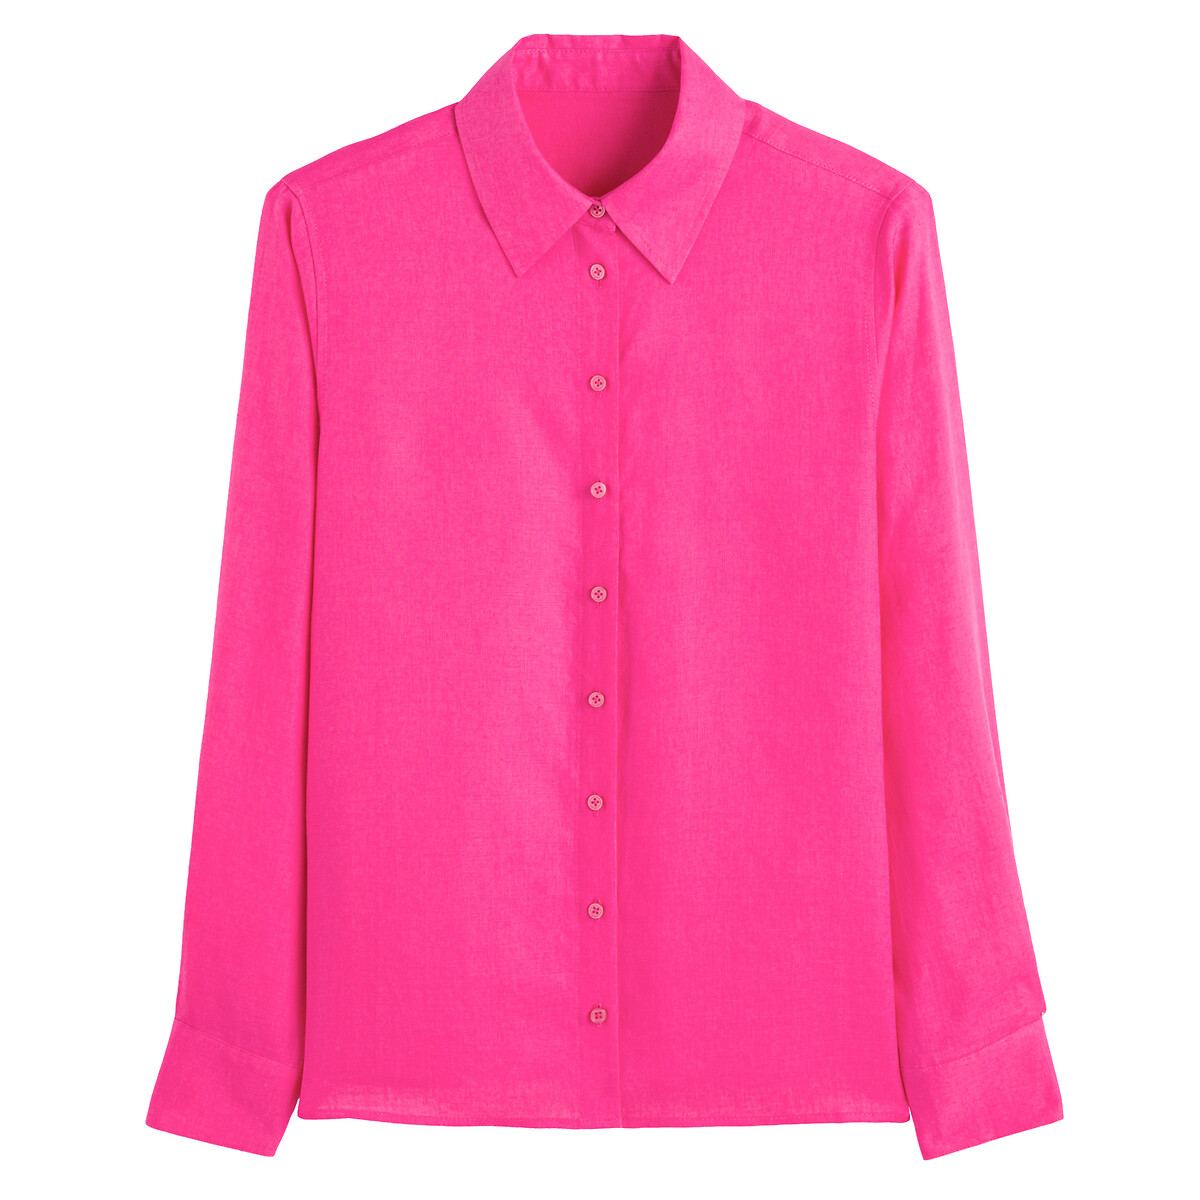 Рубашка Из льна с длинными рукавами 44 (FR) - 50 (RUS) розовый LaRedoute, размер 44 (FR) - 50 (RUS) Рубашка Из льна с длинными рукавами 44 (FR) - 50 (RUS) розовый - фото 5